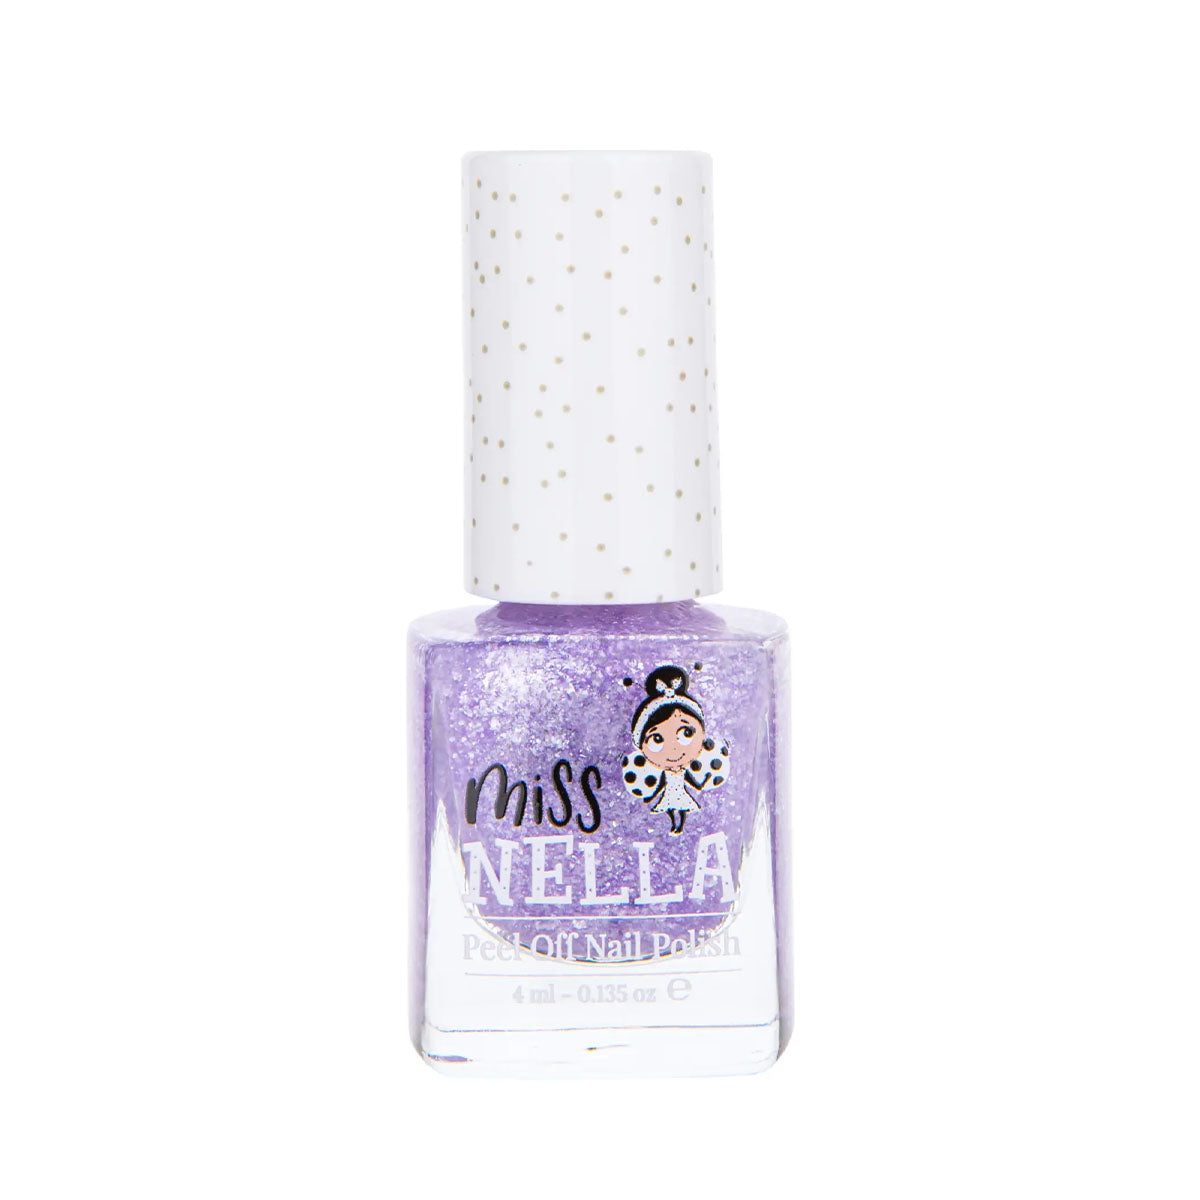 Laat de nageltjes van jouw kindje shinen met de nagellak sparkly zebra van het merk Miss Nella. De peel off nagellak is speciaal ontworpen voor kinderen en is vrij van chemicaliën. In verschillende kleuren. VanZus